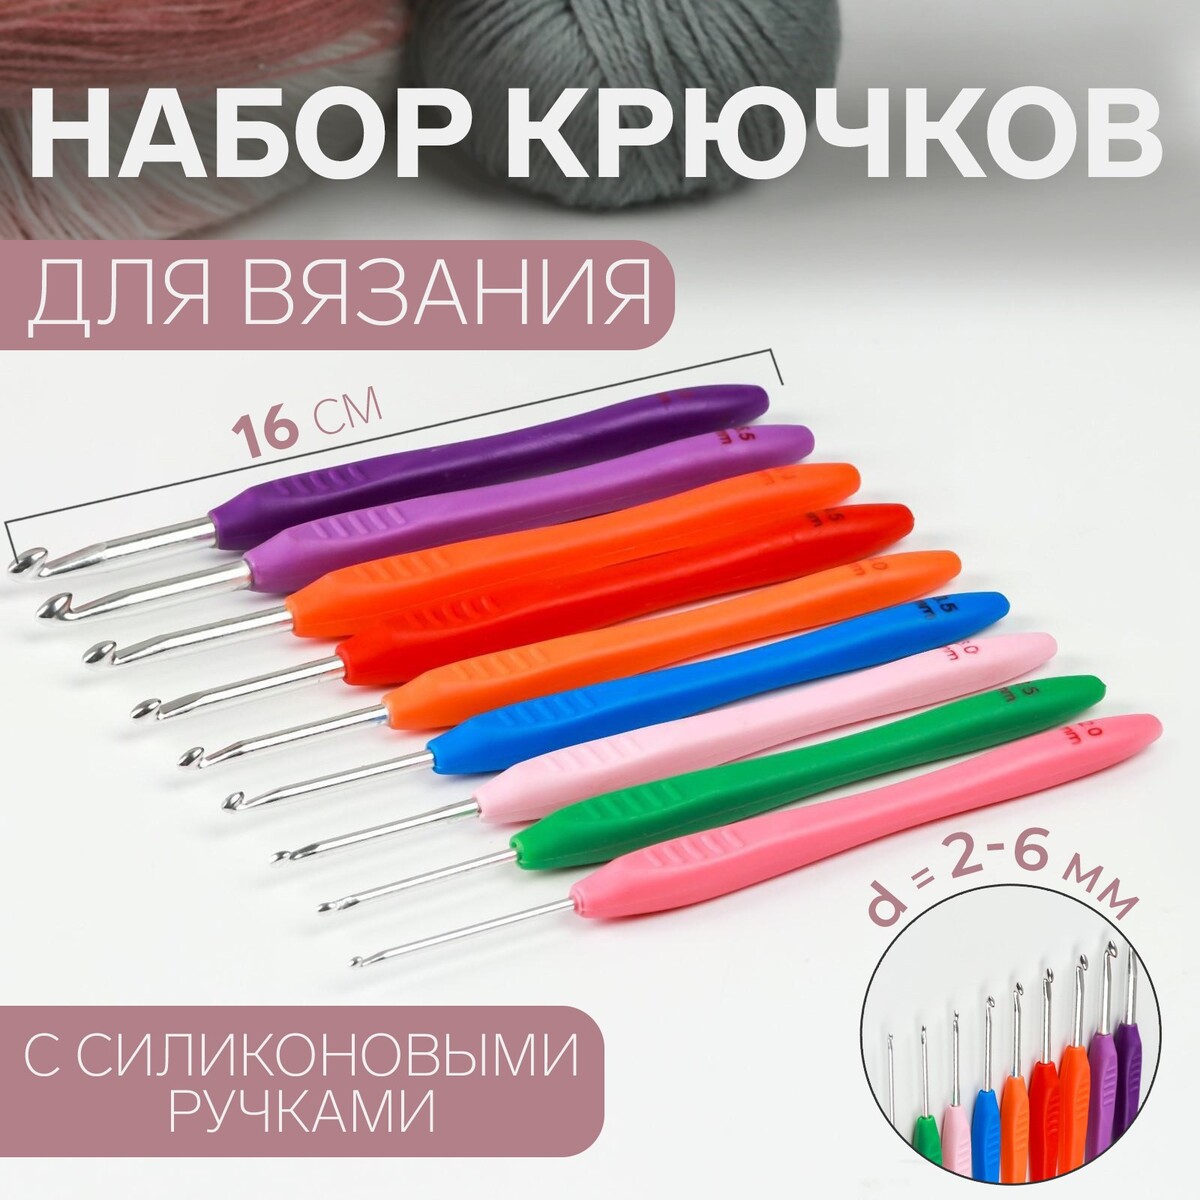 Набор крючков для вязания, d = 2-6 мм, 16 см, 9 шт, цвет разноцветный арифметика вязания авторский метод расчетов и вязания одежды с имитацией втачного рукава